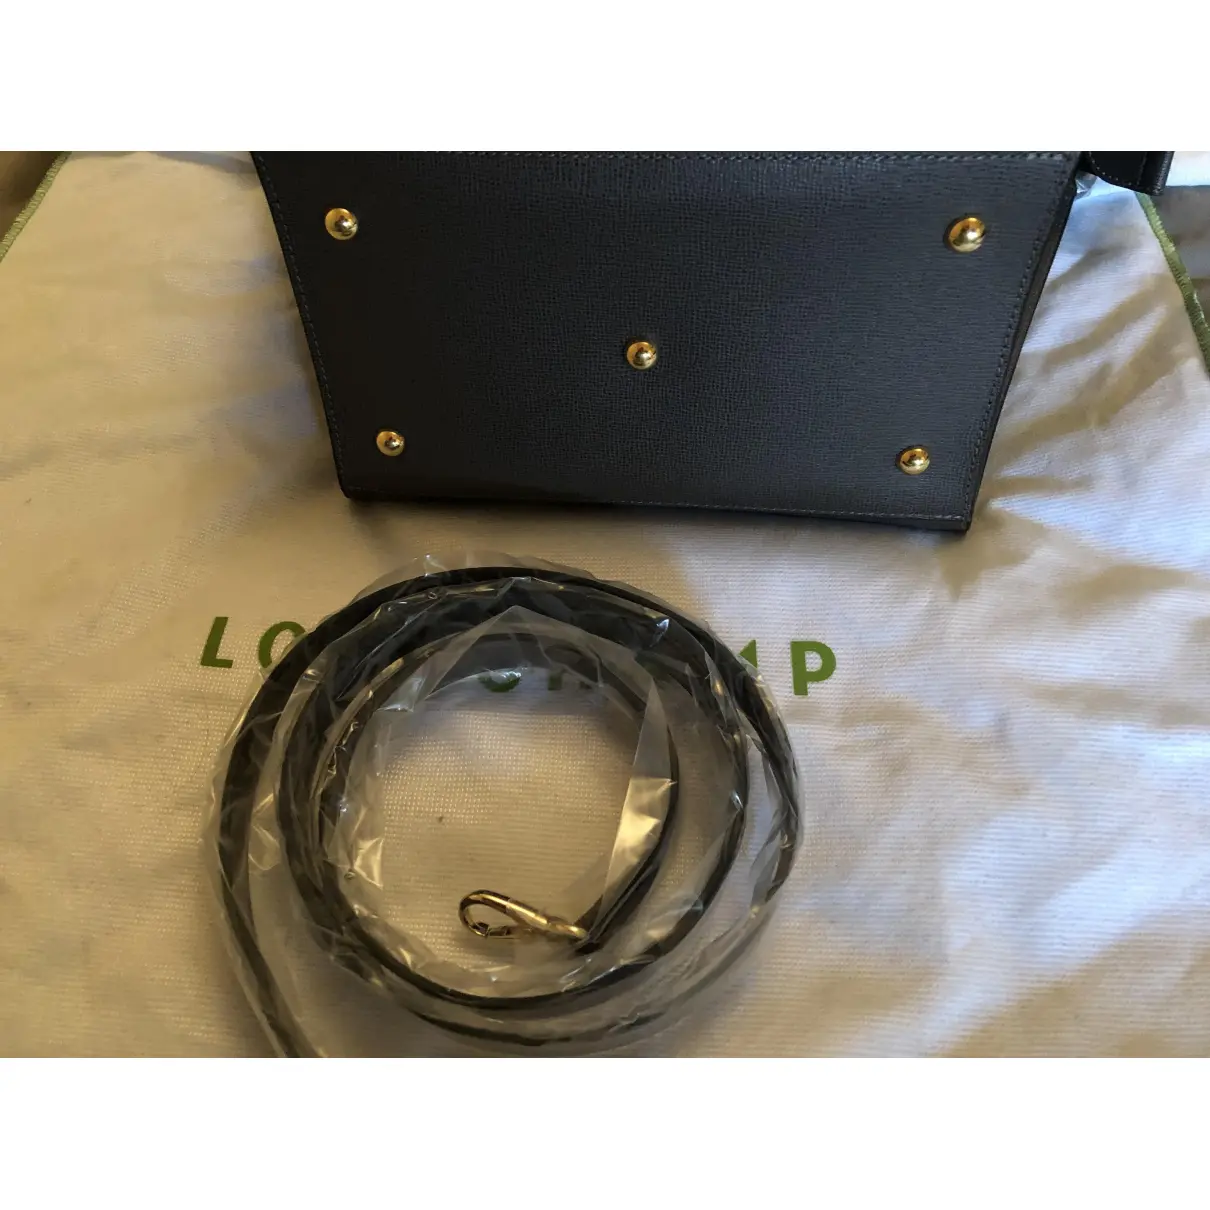 Luxury Longchamp Handbags Women